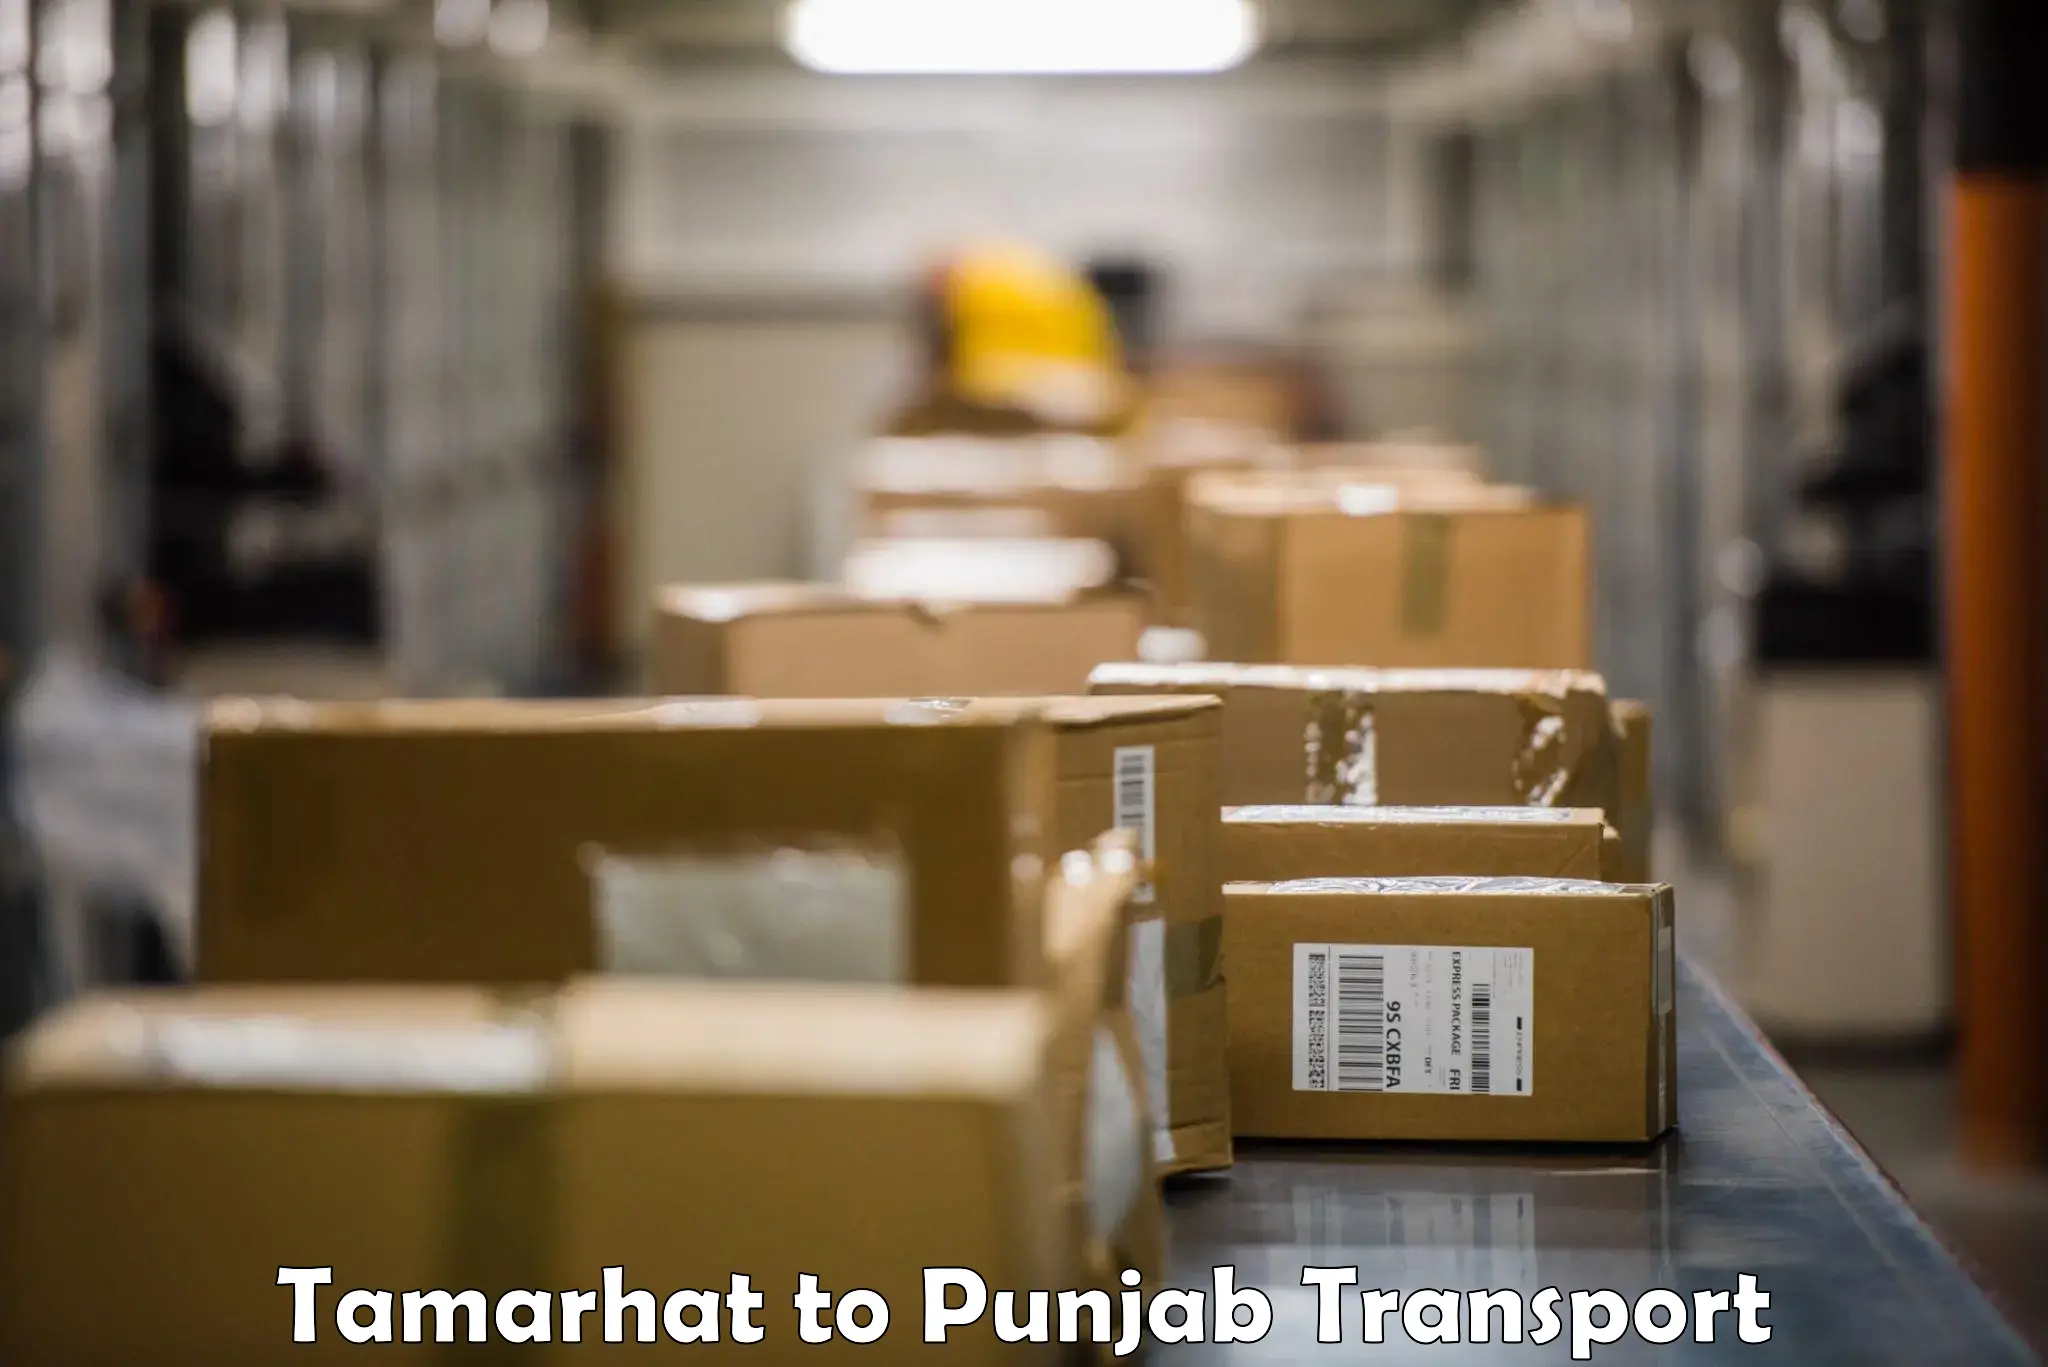 Road transport online services Tamarhat to Sangrur